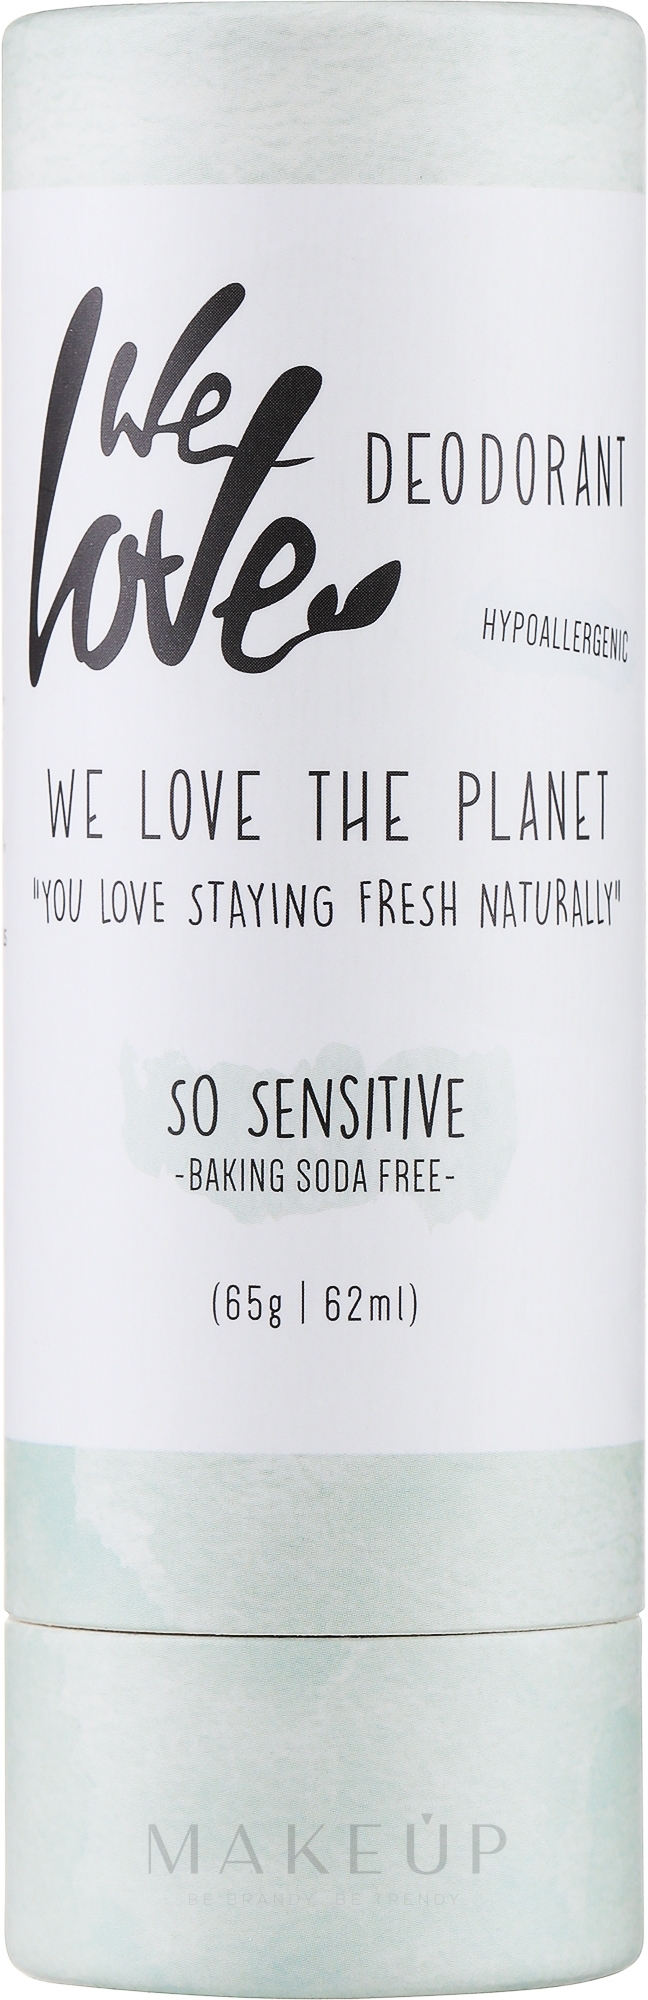 Deostick für empfindliche Haut - We Love The Planet So Sensitive Deodorant Stick — Bild 65 g